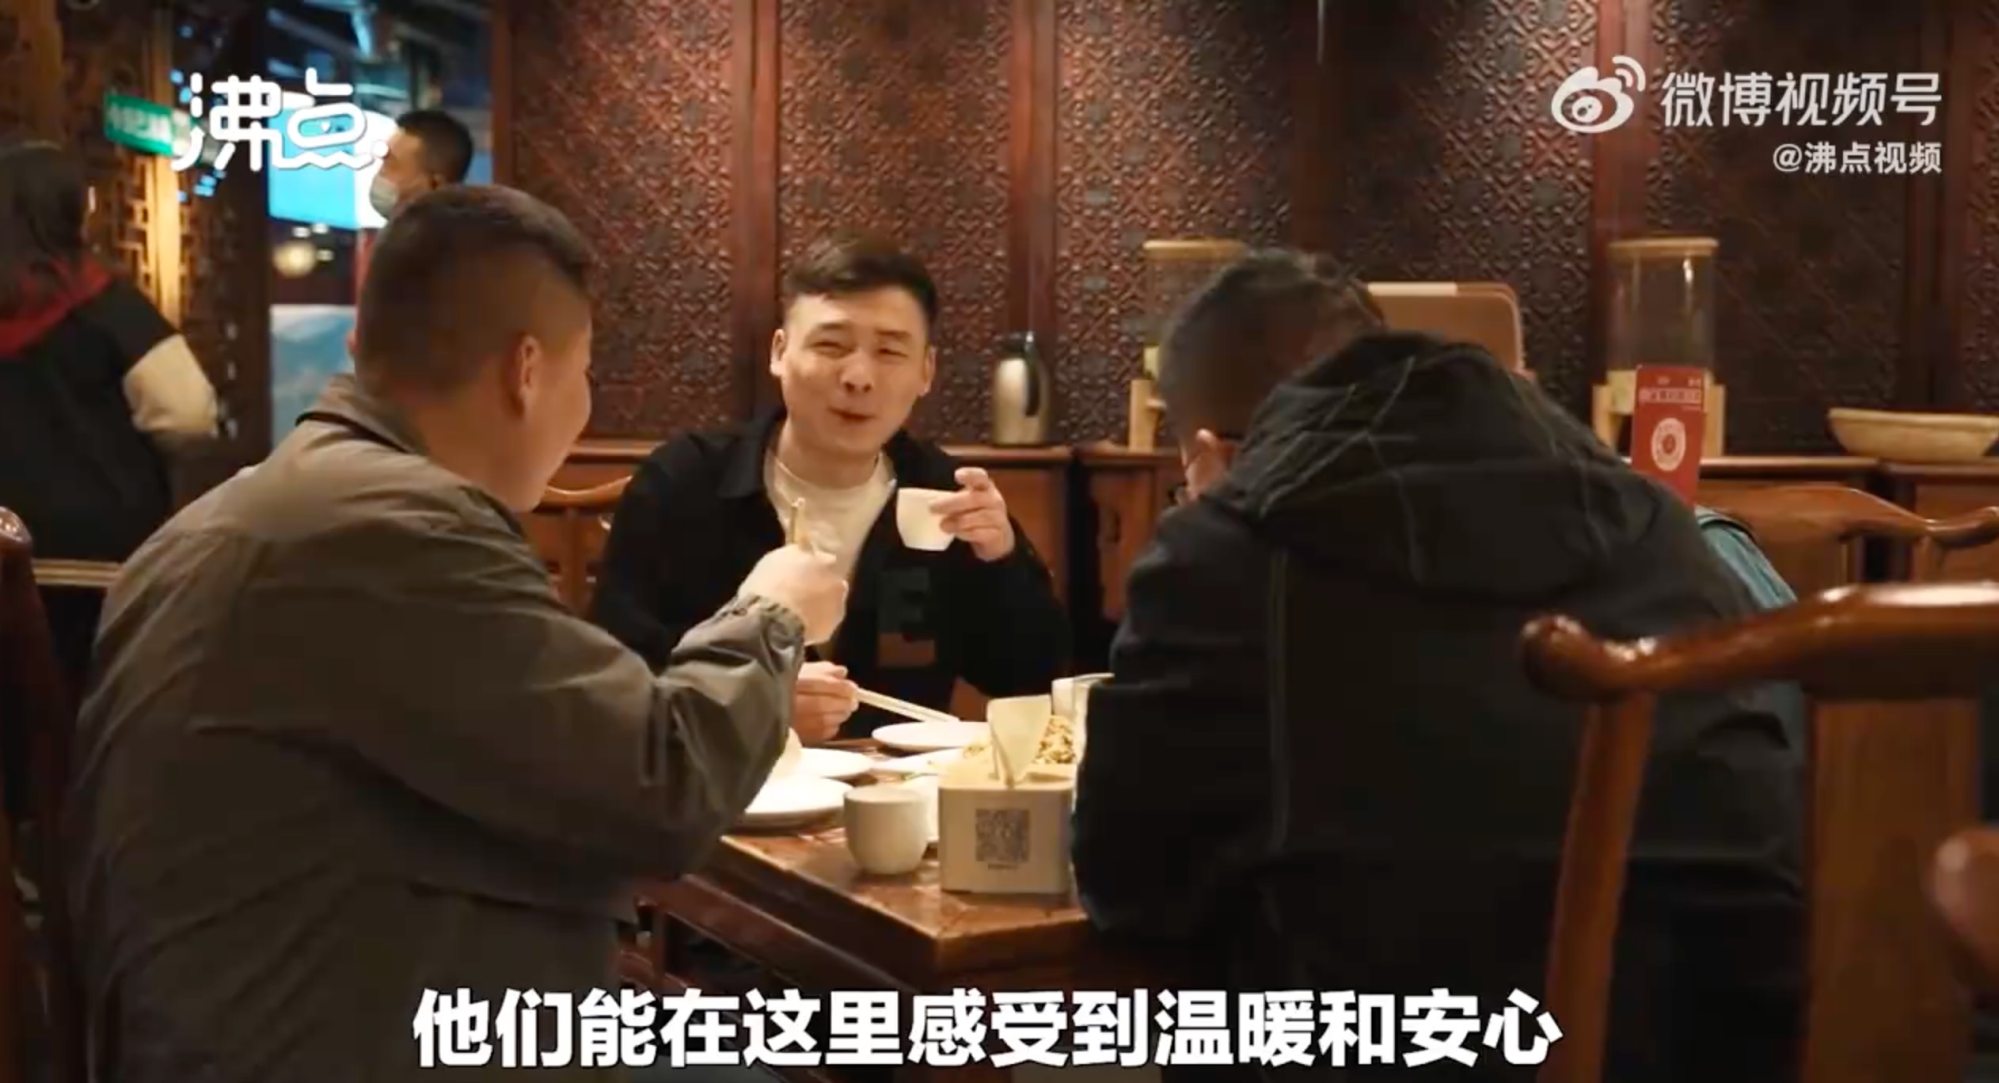 &quot;Thánh địa của những người đàn ông trung niên&quot;: chuỗi nhà hàng ở Trung Quốc nơi người trưởng thành tìm đến để được ở một mình và khóc - Ảnh 1.